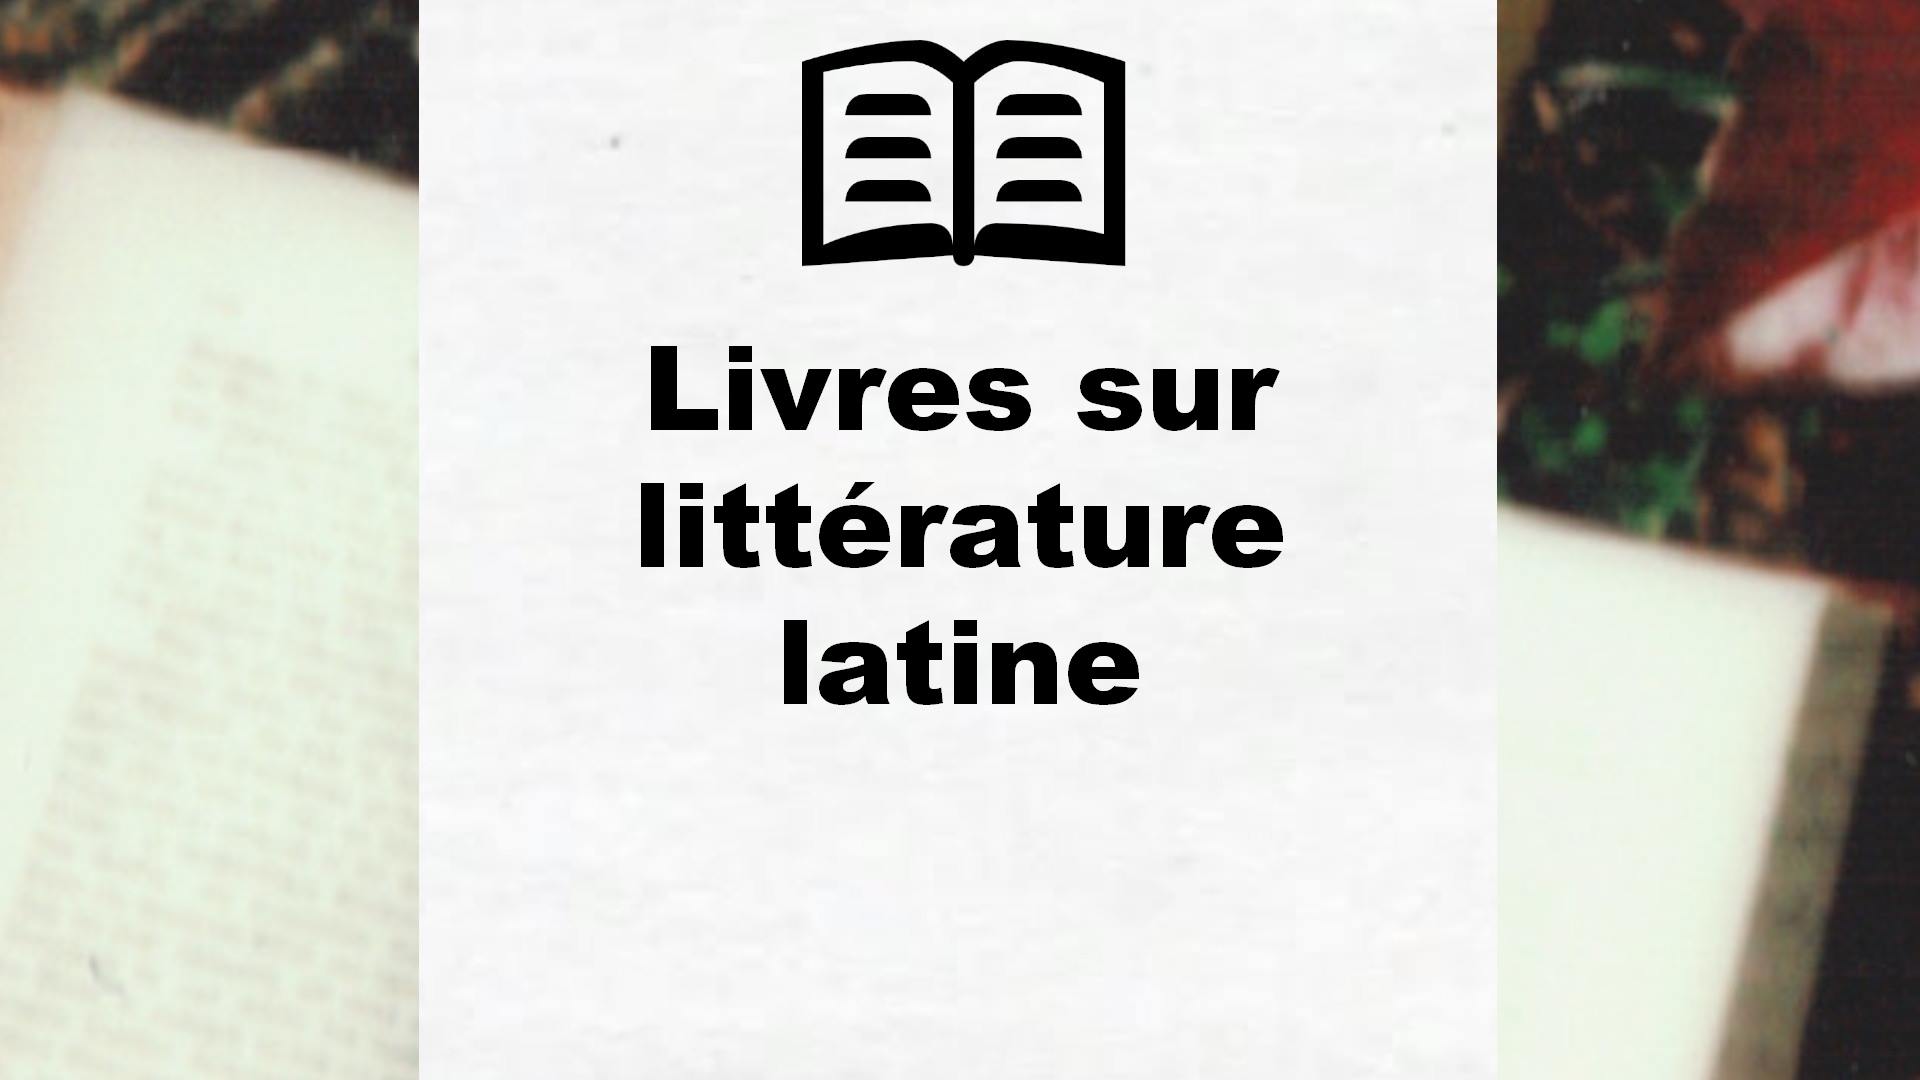 Livres sur littérature latine